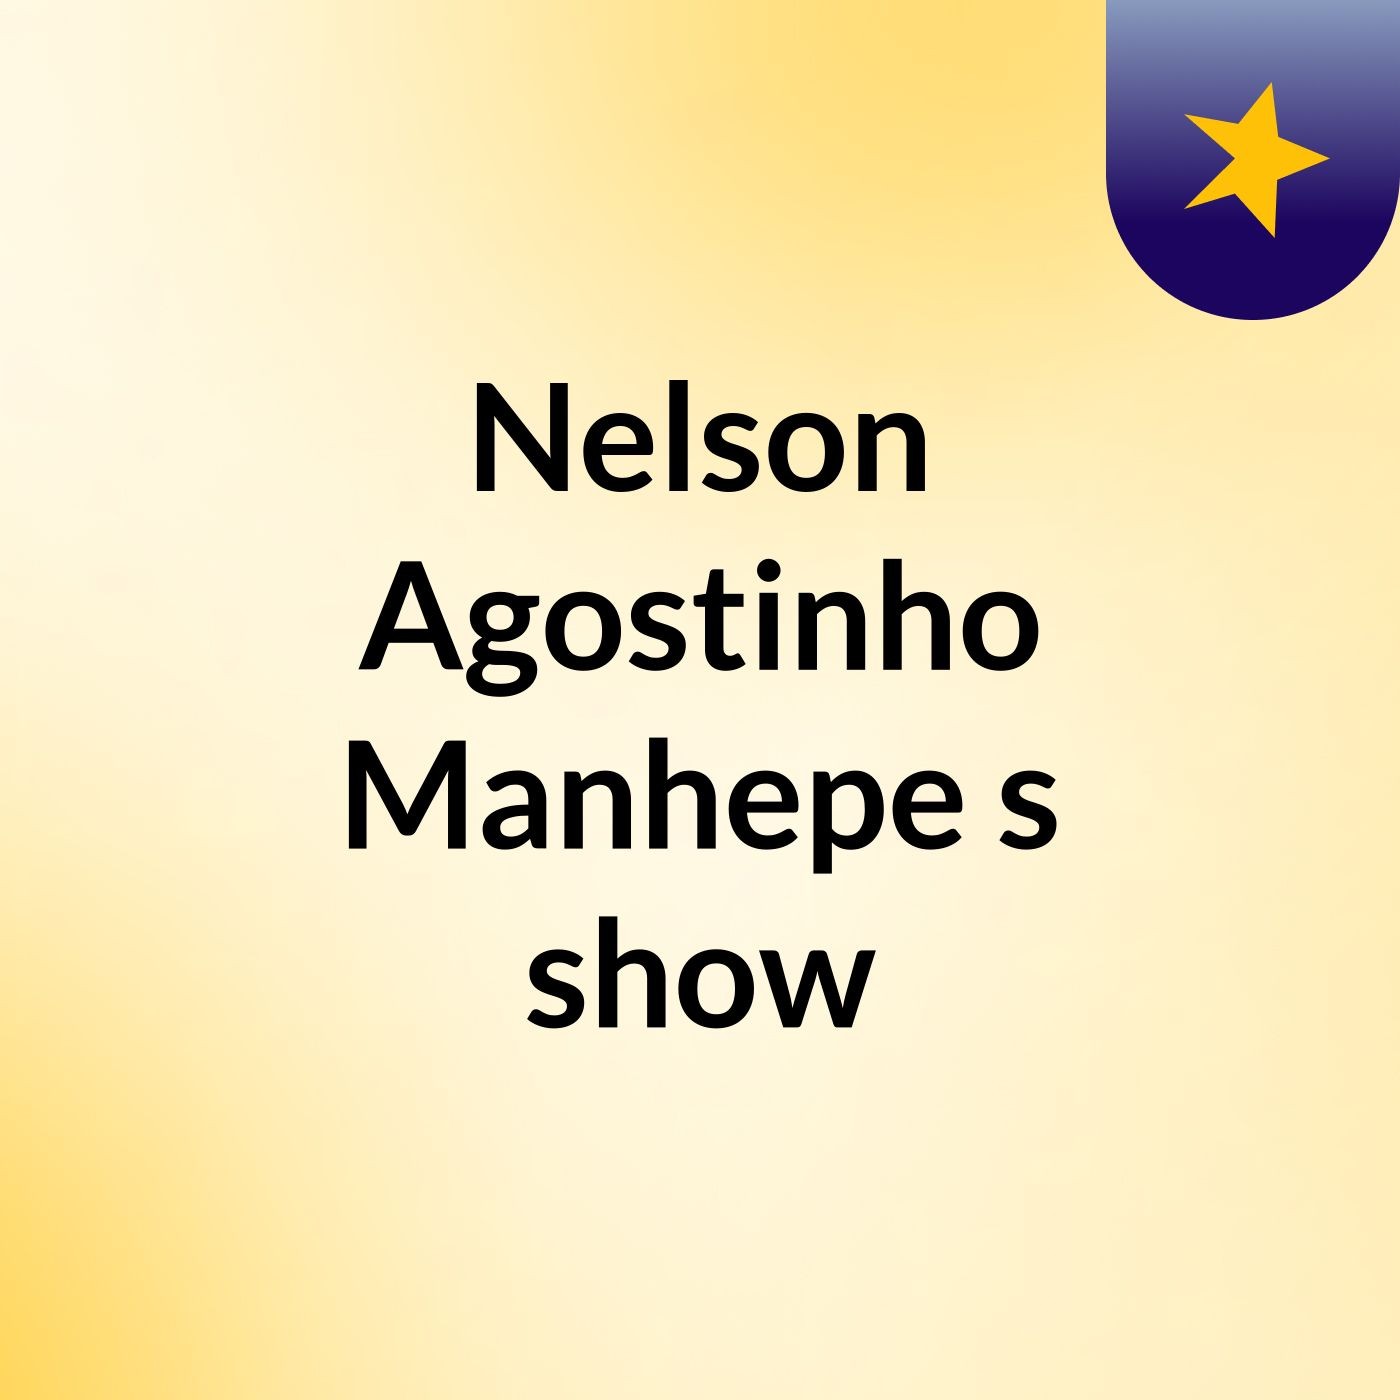 Nelson Agostinho Manhepe's show